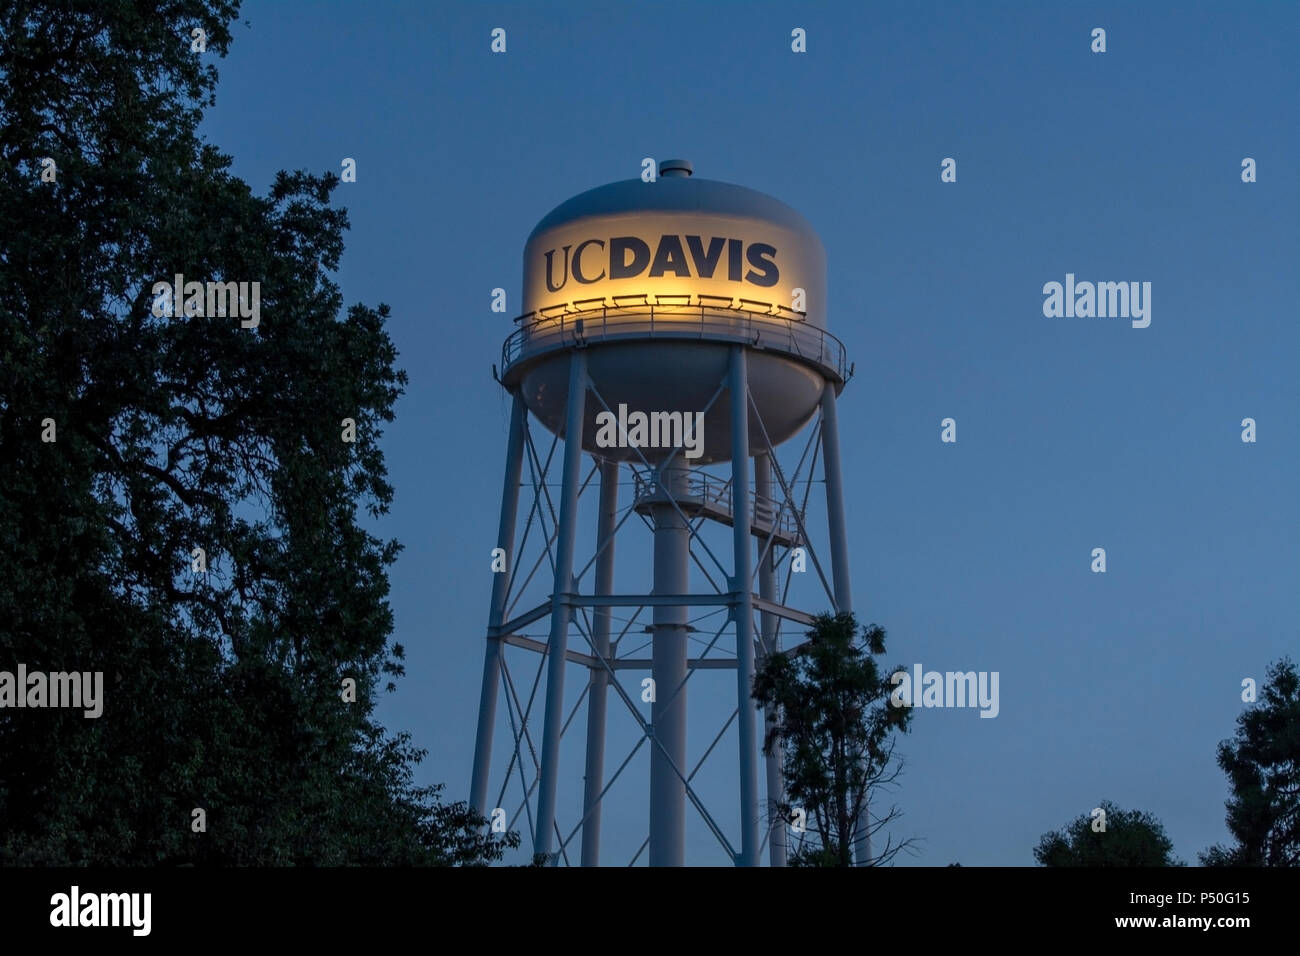 Davis, Californie, USA, 10 juin 2018. UC Davis' tour de l'eau dans l'heure bleue. C'est une véritable icône de la UC Davis et de la ville de Davis. Banque D'Images